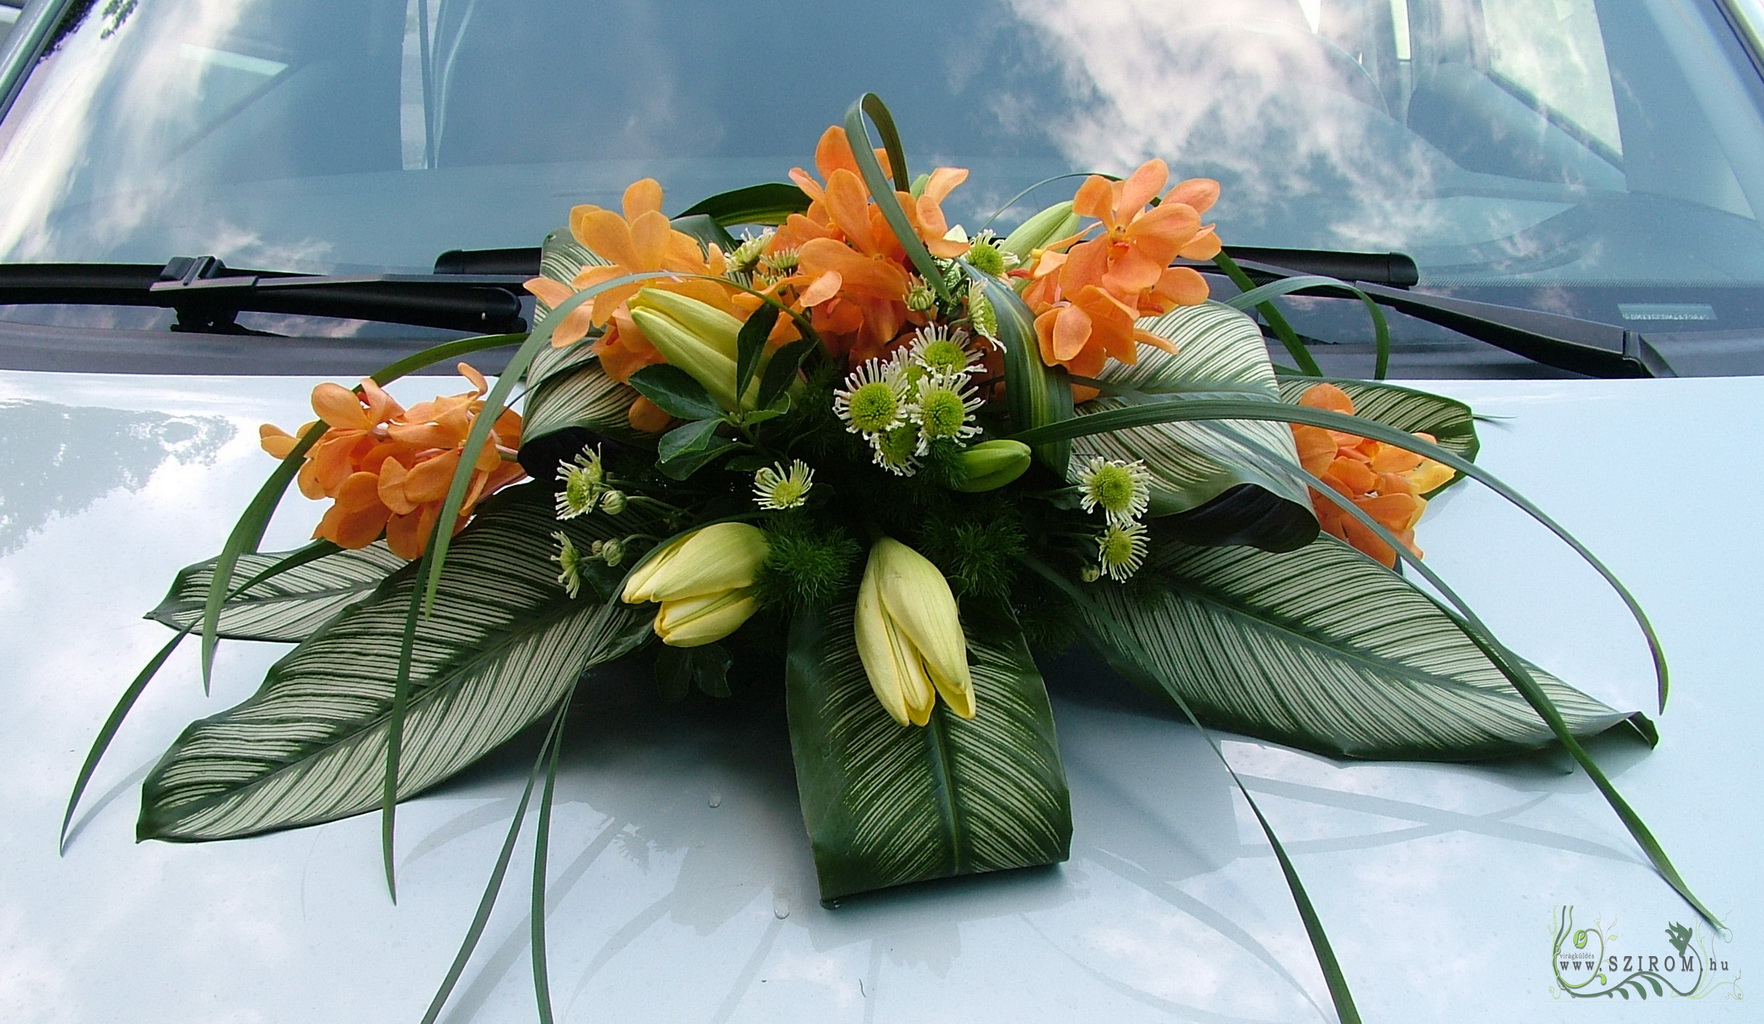 ovális autódísz orchideával (liliom, krizantém, narancssárga, sárga, zöld)